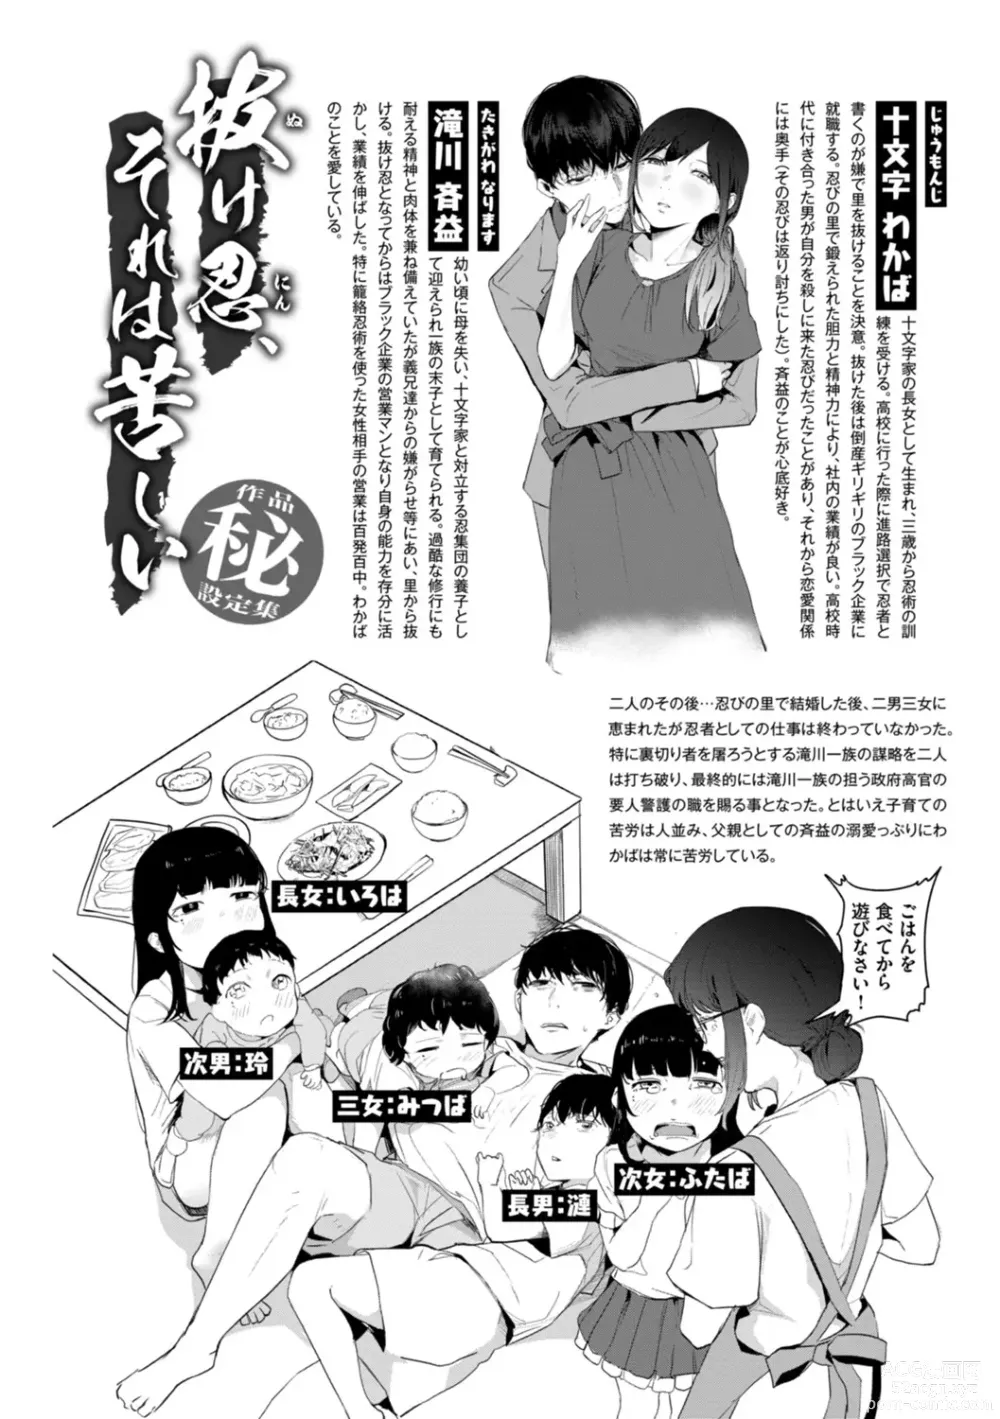 Page 166 of manga Kiteretsu Porno Zenshuu